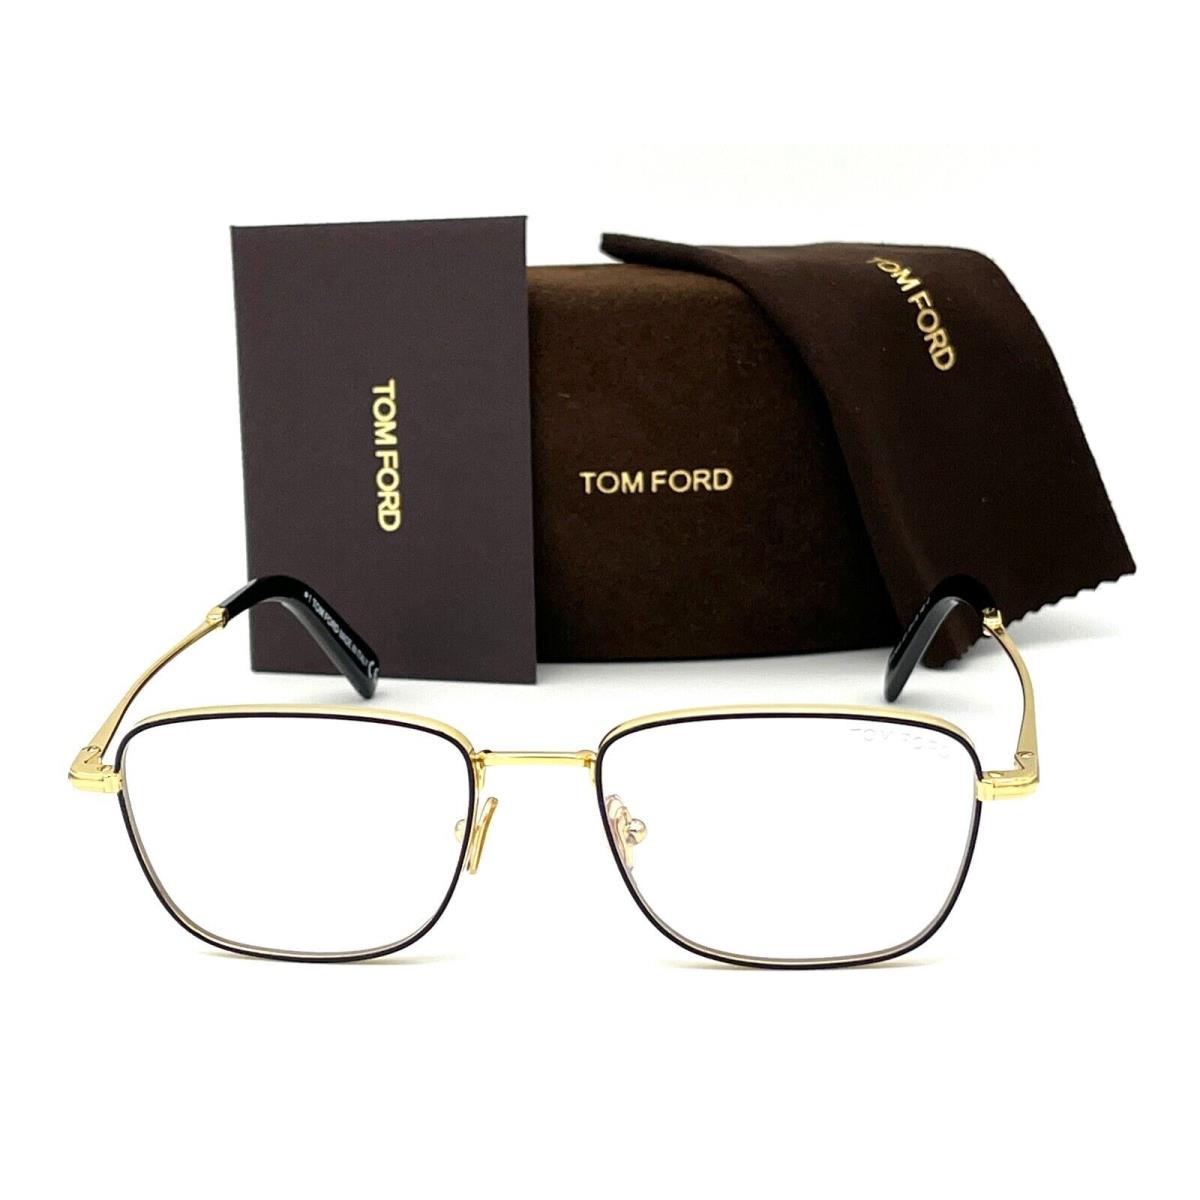 Tom Ford eyeglasses  - Black Gold Frame, Blue Block Lens 1